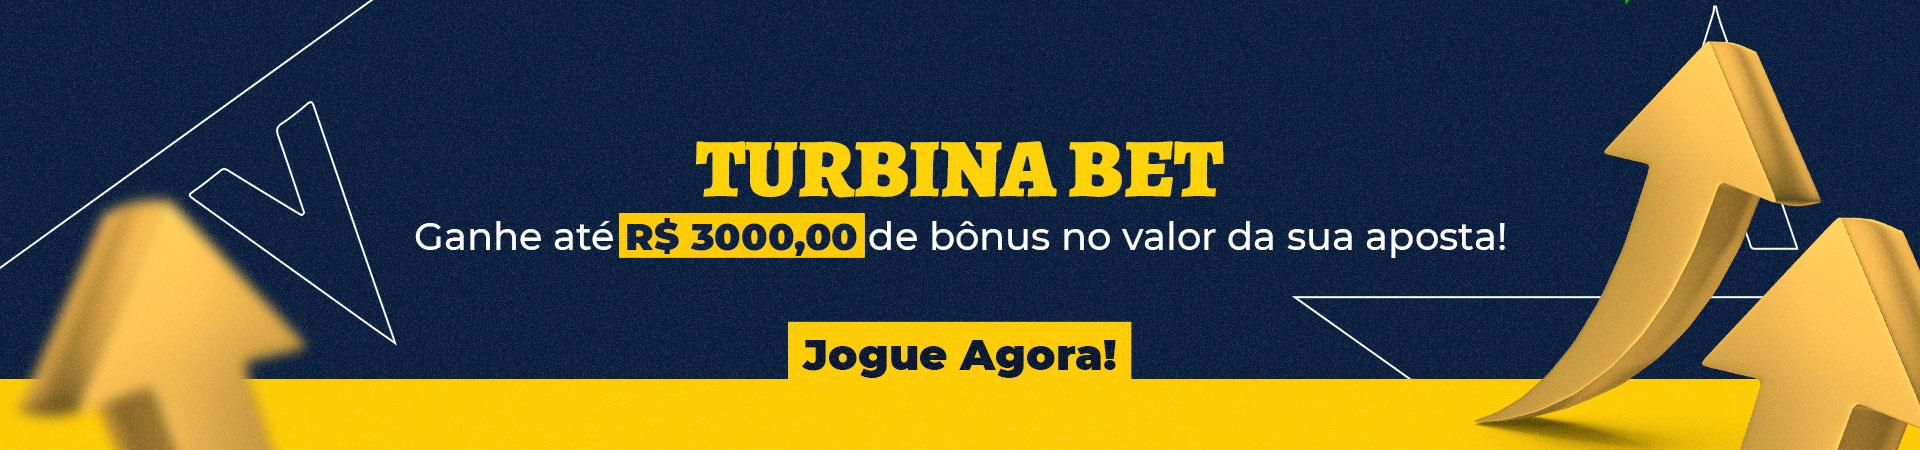 betpix365 bonus 10 reais